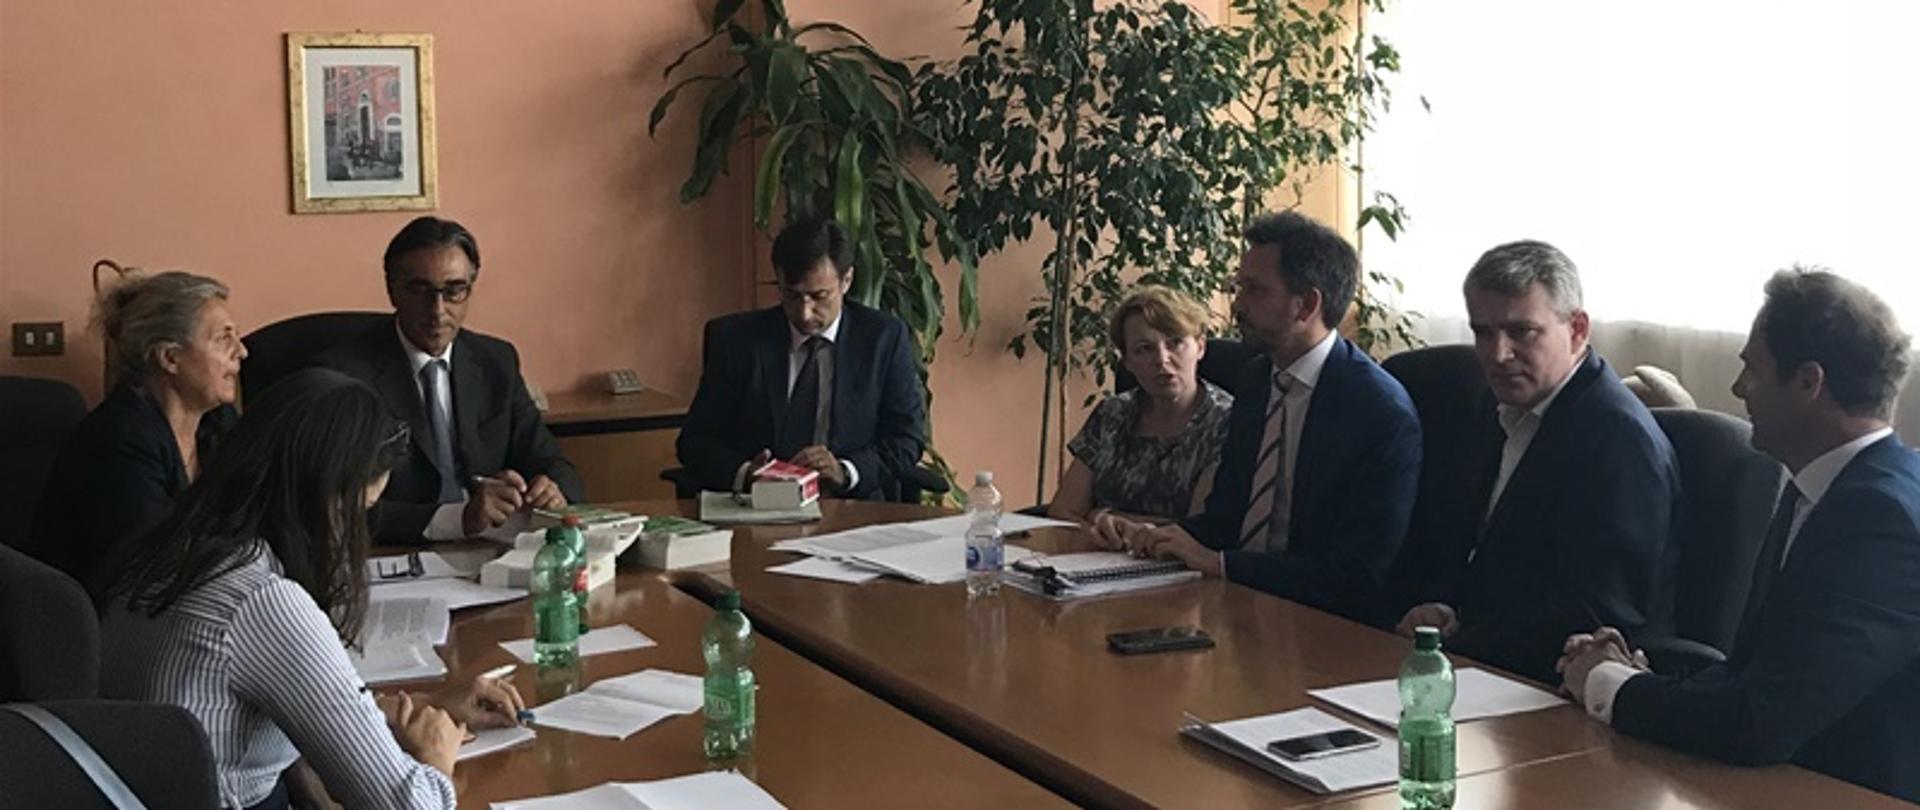 Międzynarodowa dyskusja o przeciwdziałaniu przewlekłości – wizyta przedstawicieli Ministerstwa w Rzymie